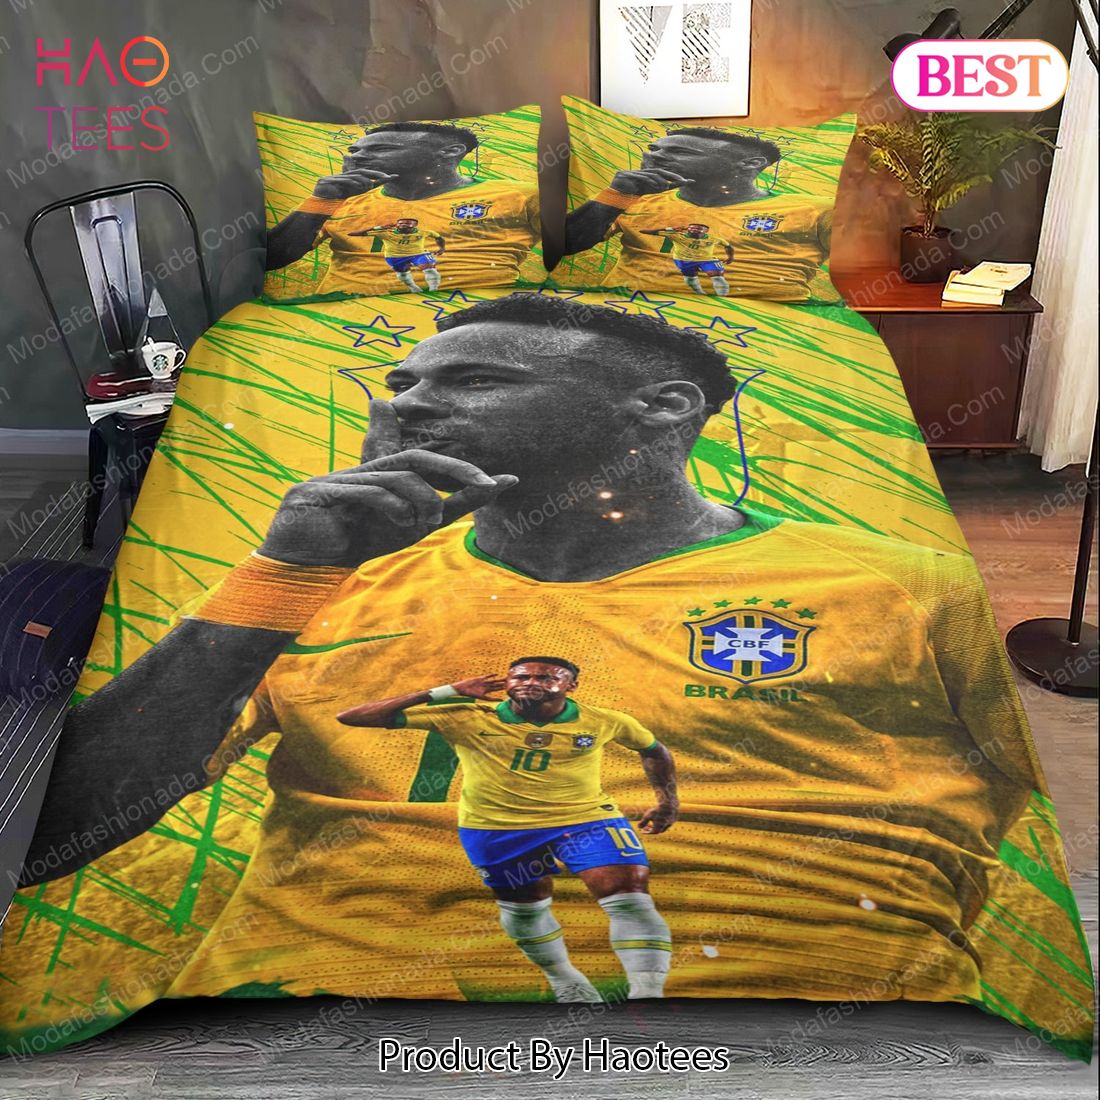 Buy Neymar Brazil Bedding Sets 03 Bed Sets, Bedroom Sets, Comforter Sets, Duvet Cover, Bedspread